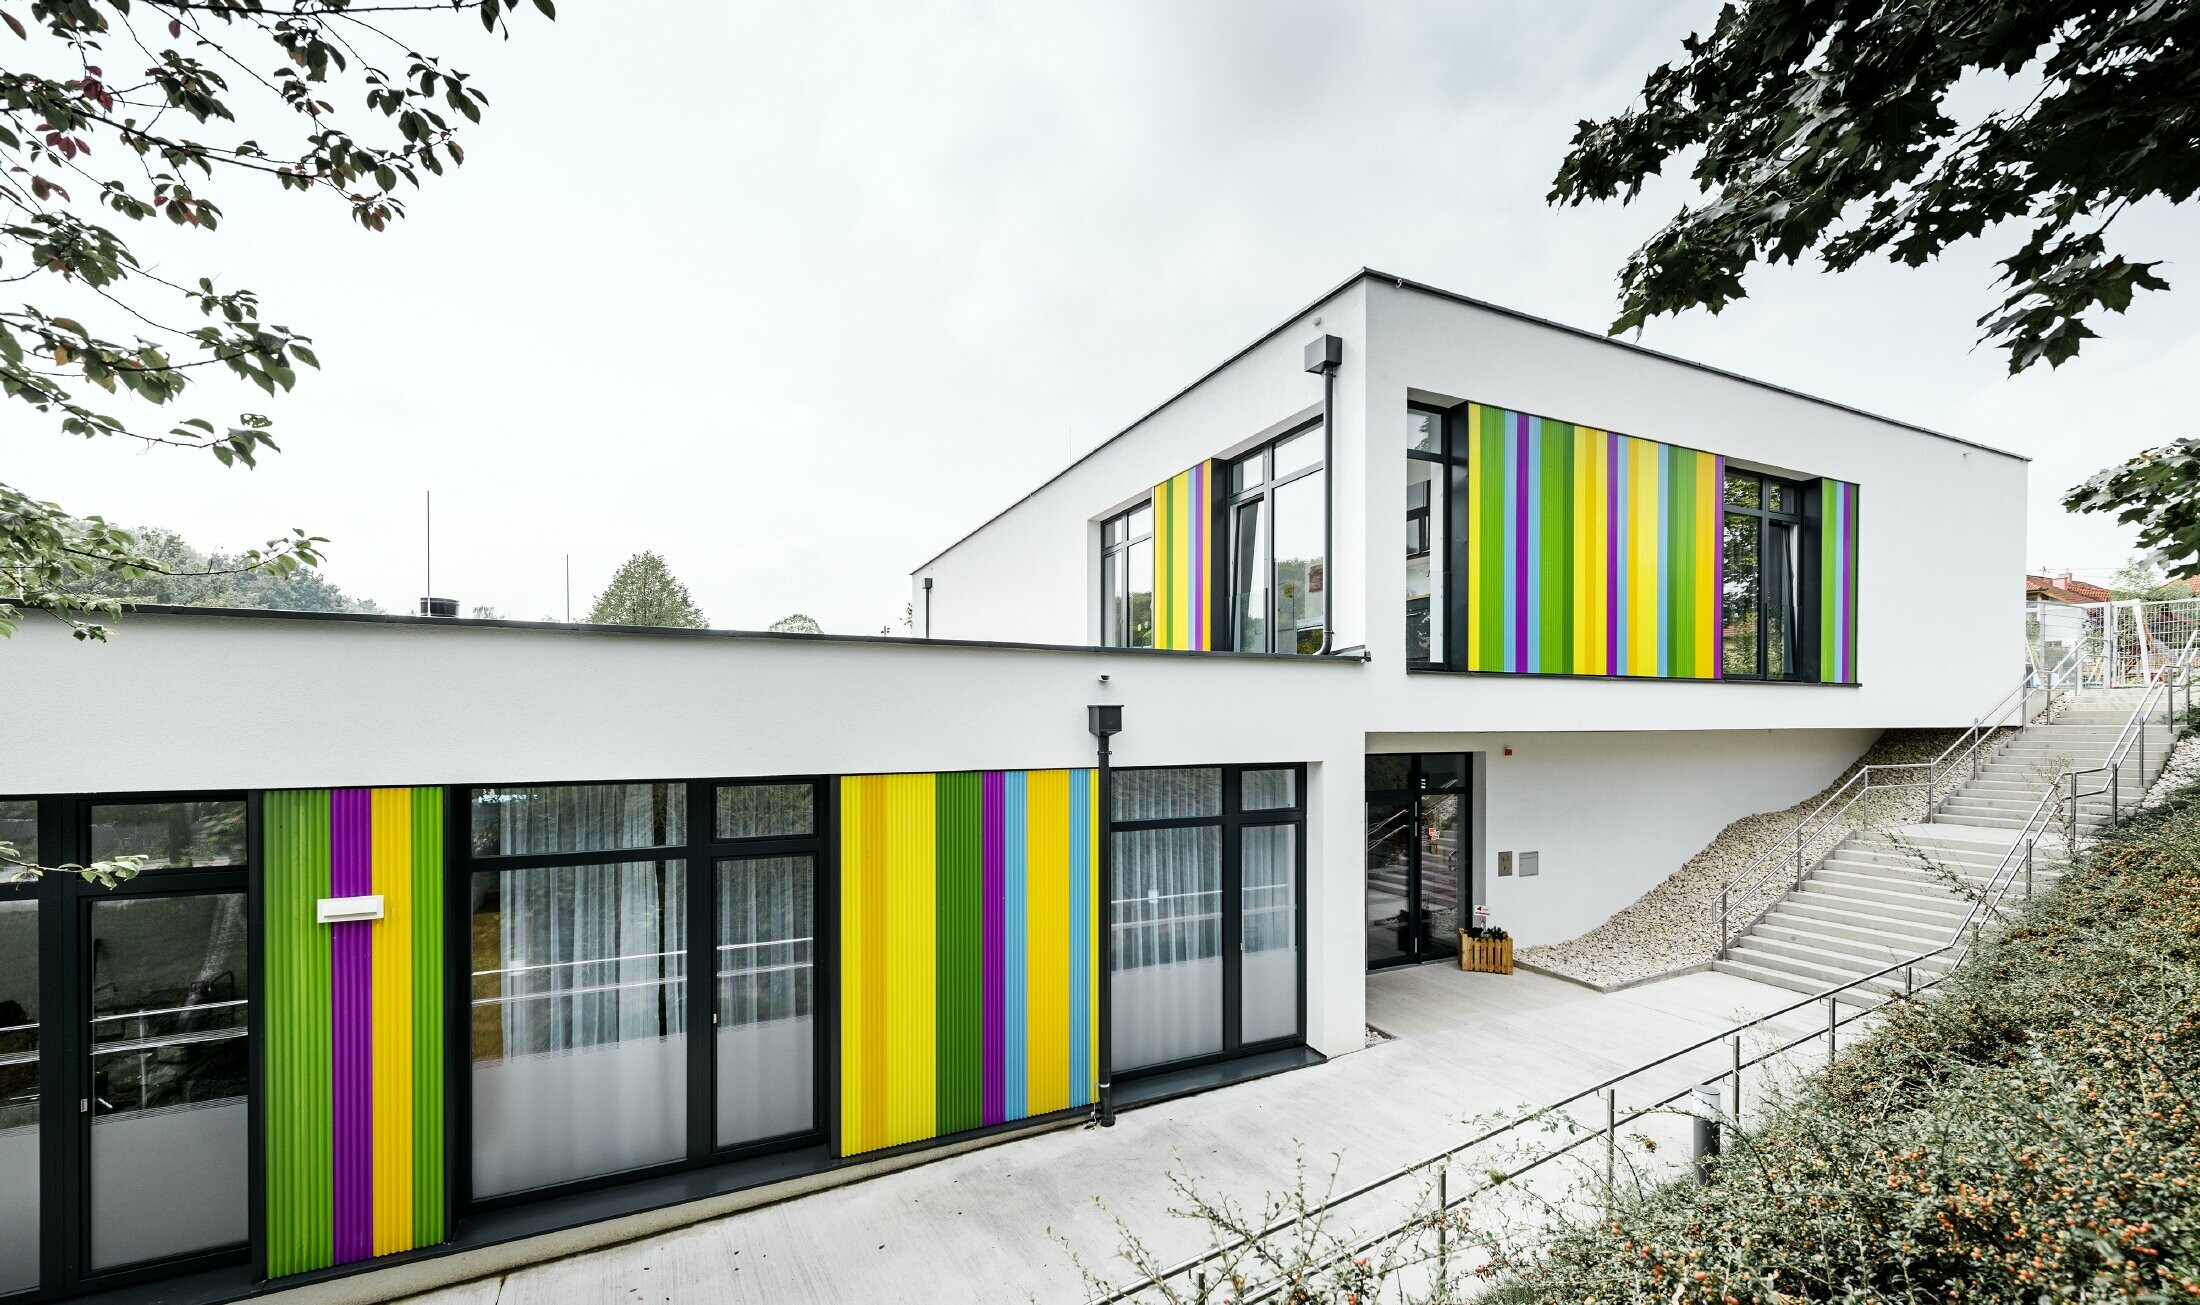 Fasadeelementer i flere farger fra PREFA på barnehagen i Hargelsberg. Bygningen har flatt tak og store vinduer helt ned til bakken.